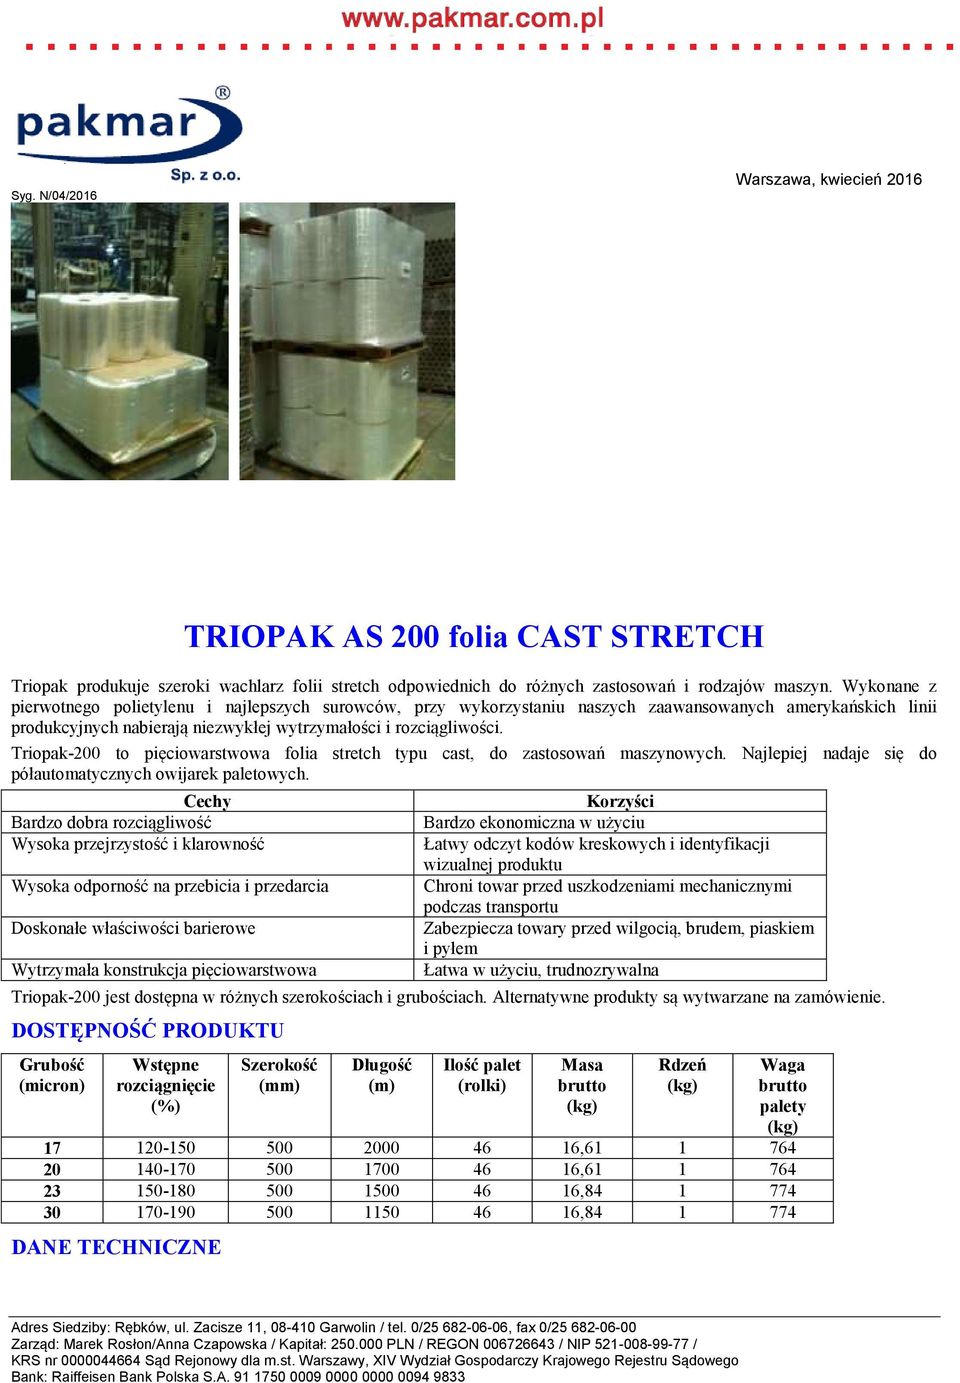 Triopak-200 jest dostępna w różnych szerokościach i grubościach.